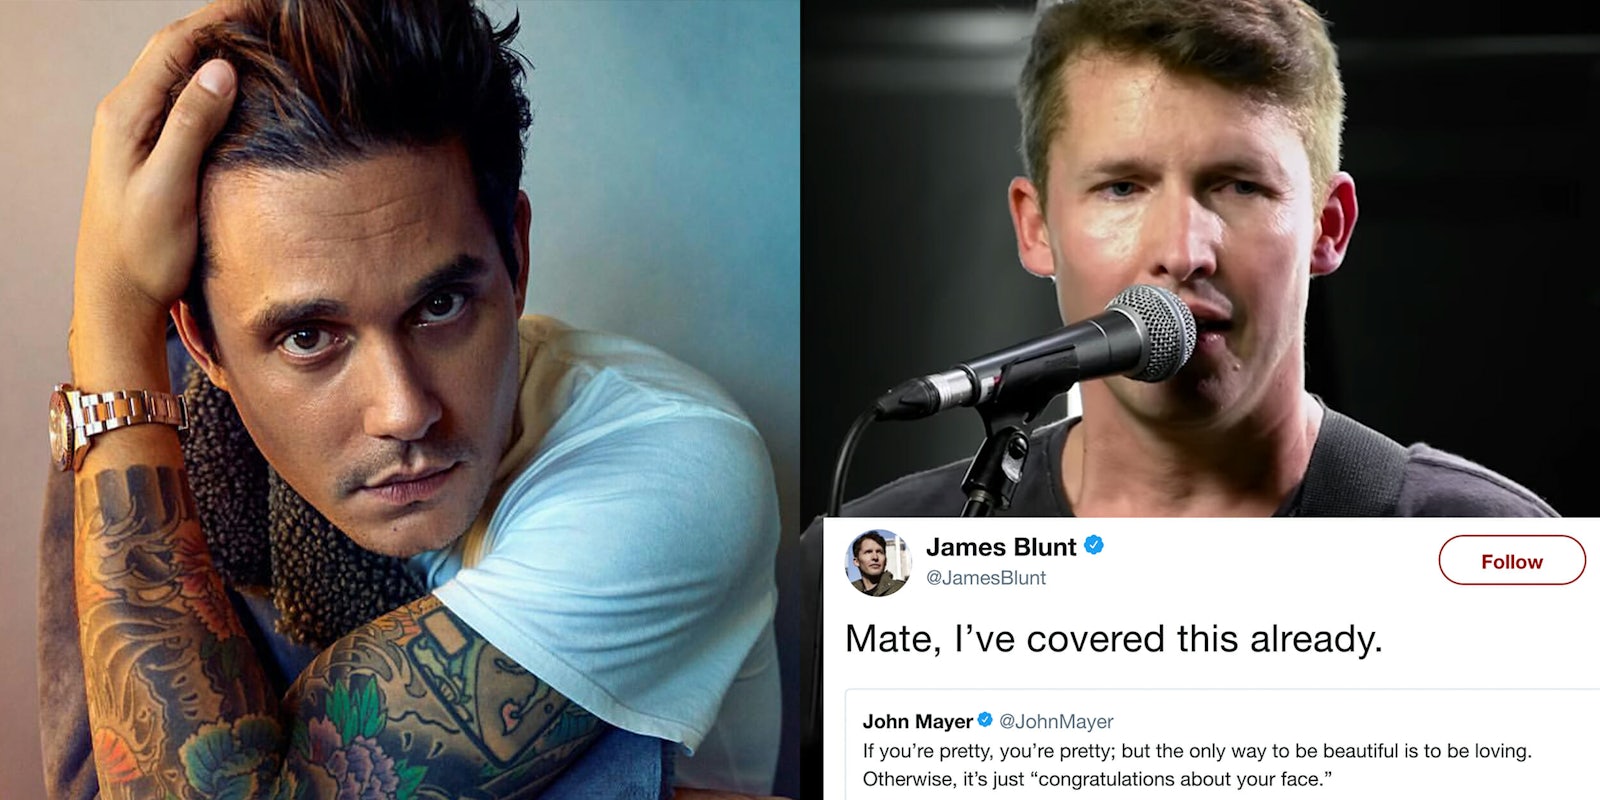 James Blunt tweets at John Mayer